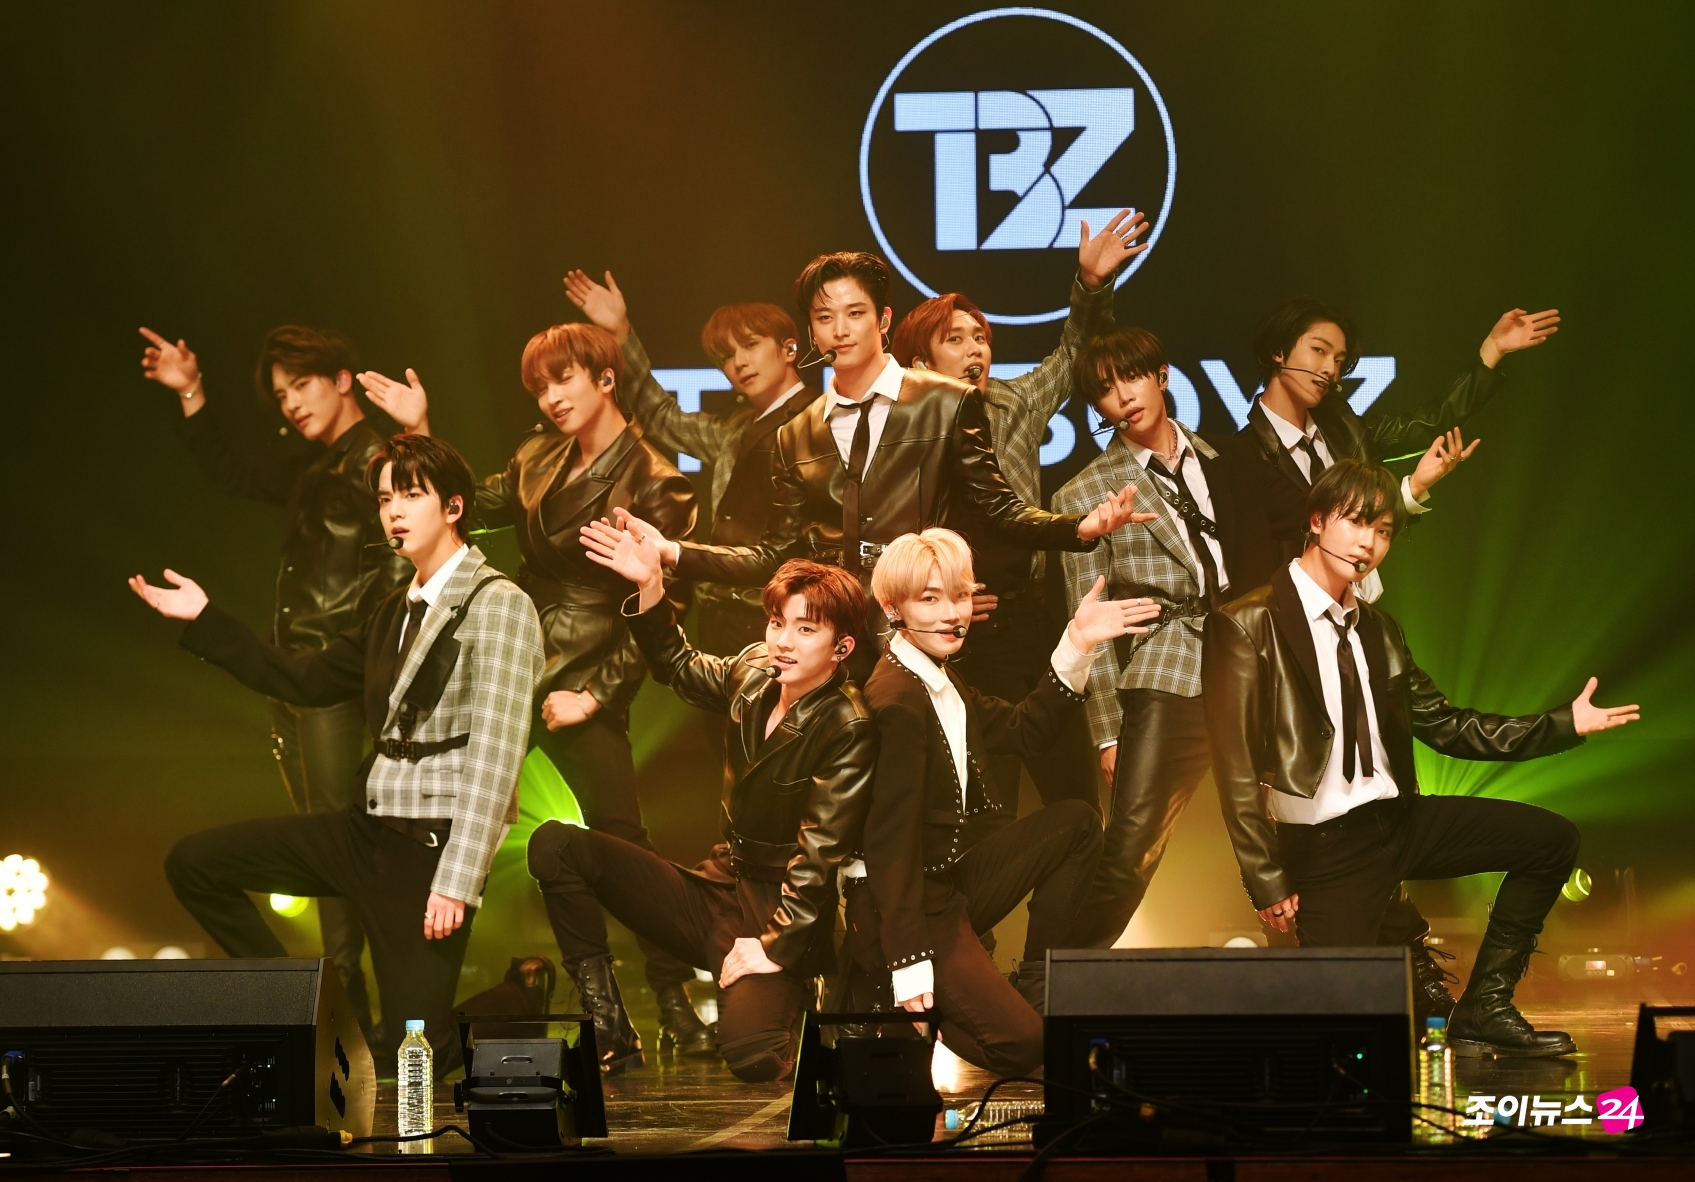 보이그룹 더보이즈가 21일 오후 서울 구로아트밸리에서 열린 온택트 컬래버레이션 콘서트 '조이천사콘서트'에서 멋진 무대를 선보이고 있다.